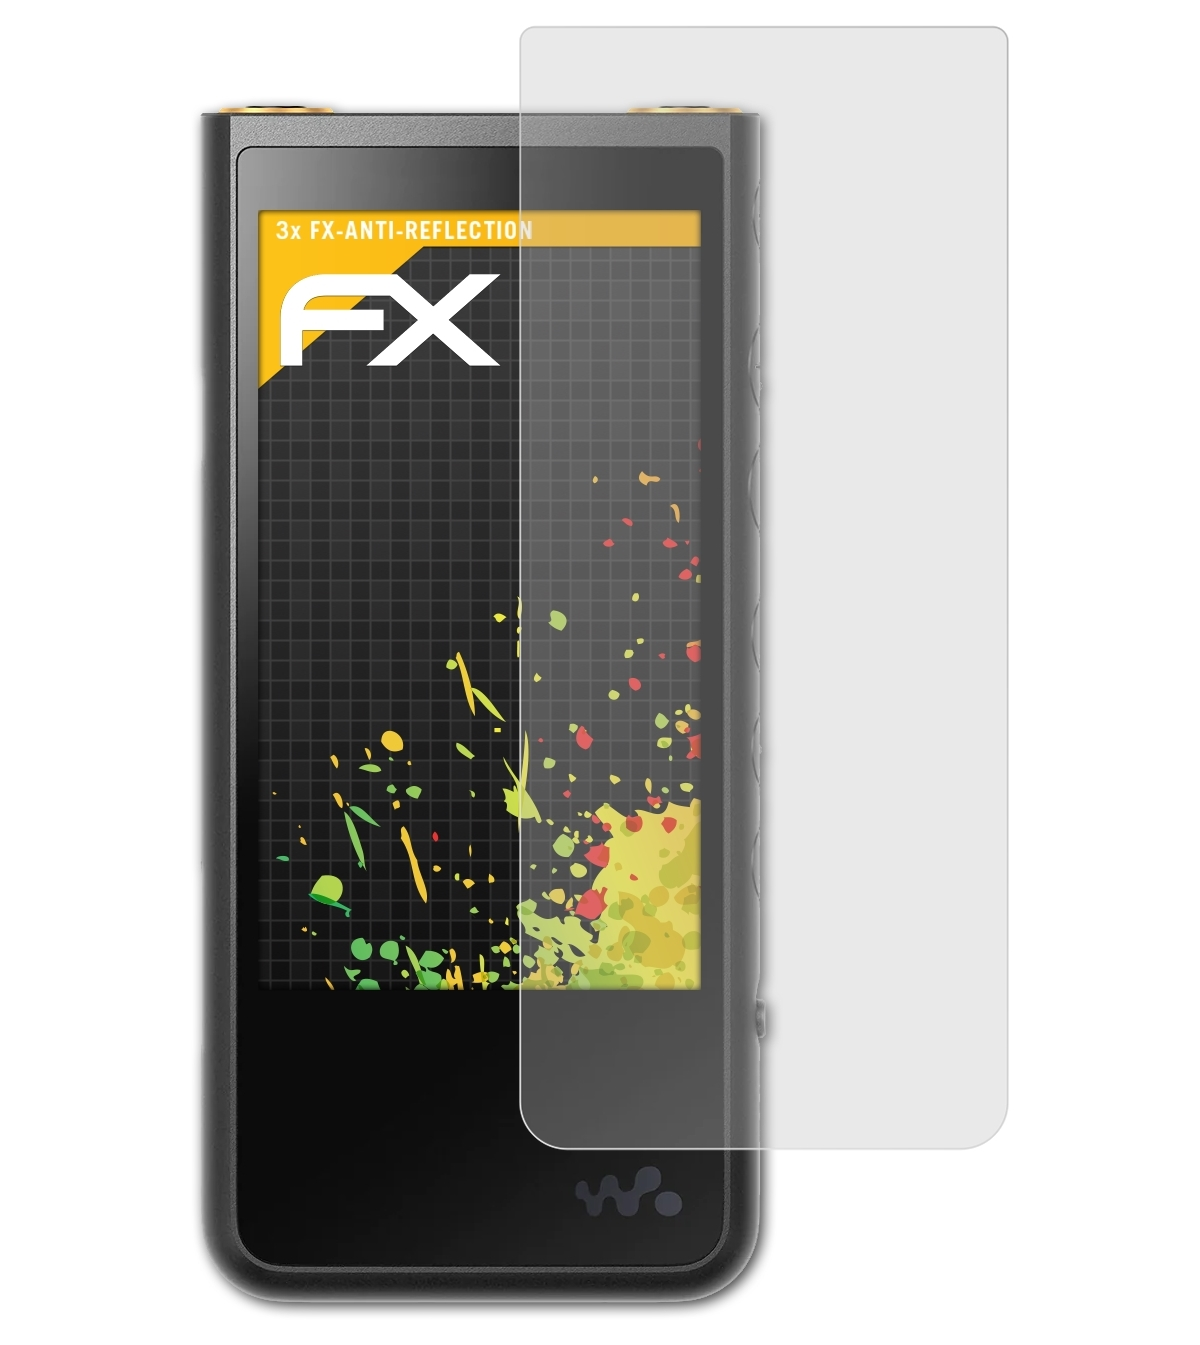 Walkman FX-Antireflex Displayschutz(für 3x ATFOLIX NW-ZX500) Sony